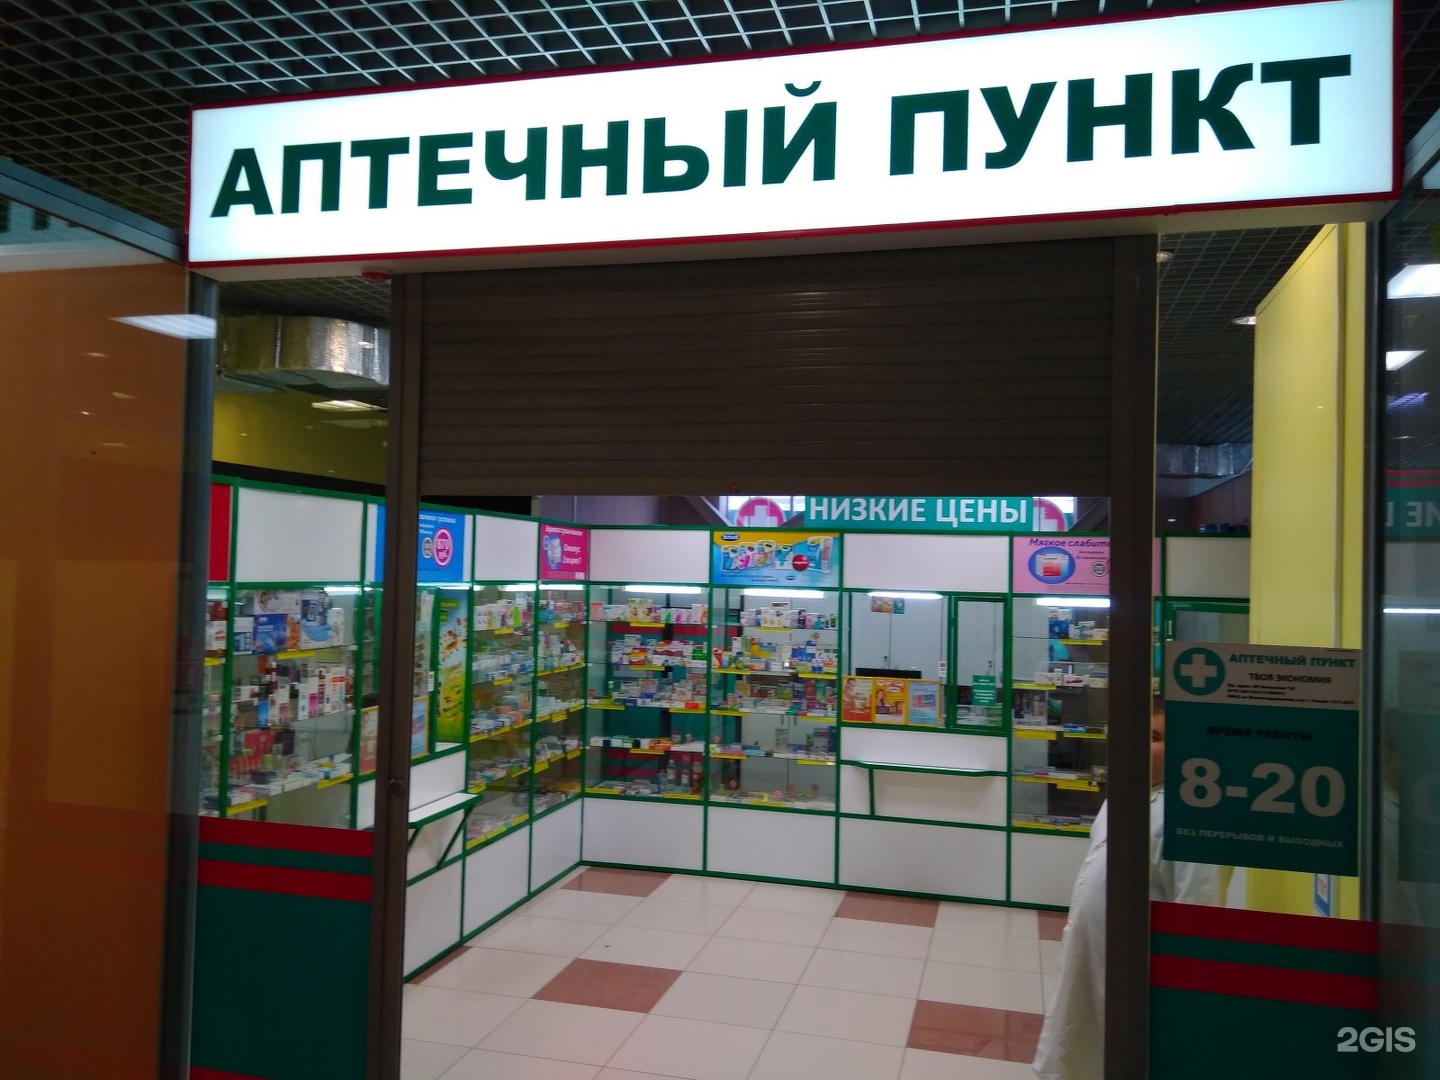 Хрустальная 19 Ульяновск Аптека